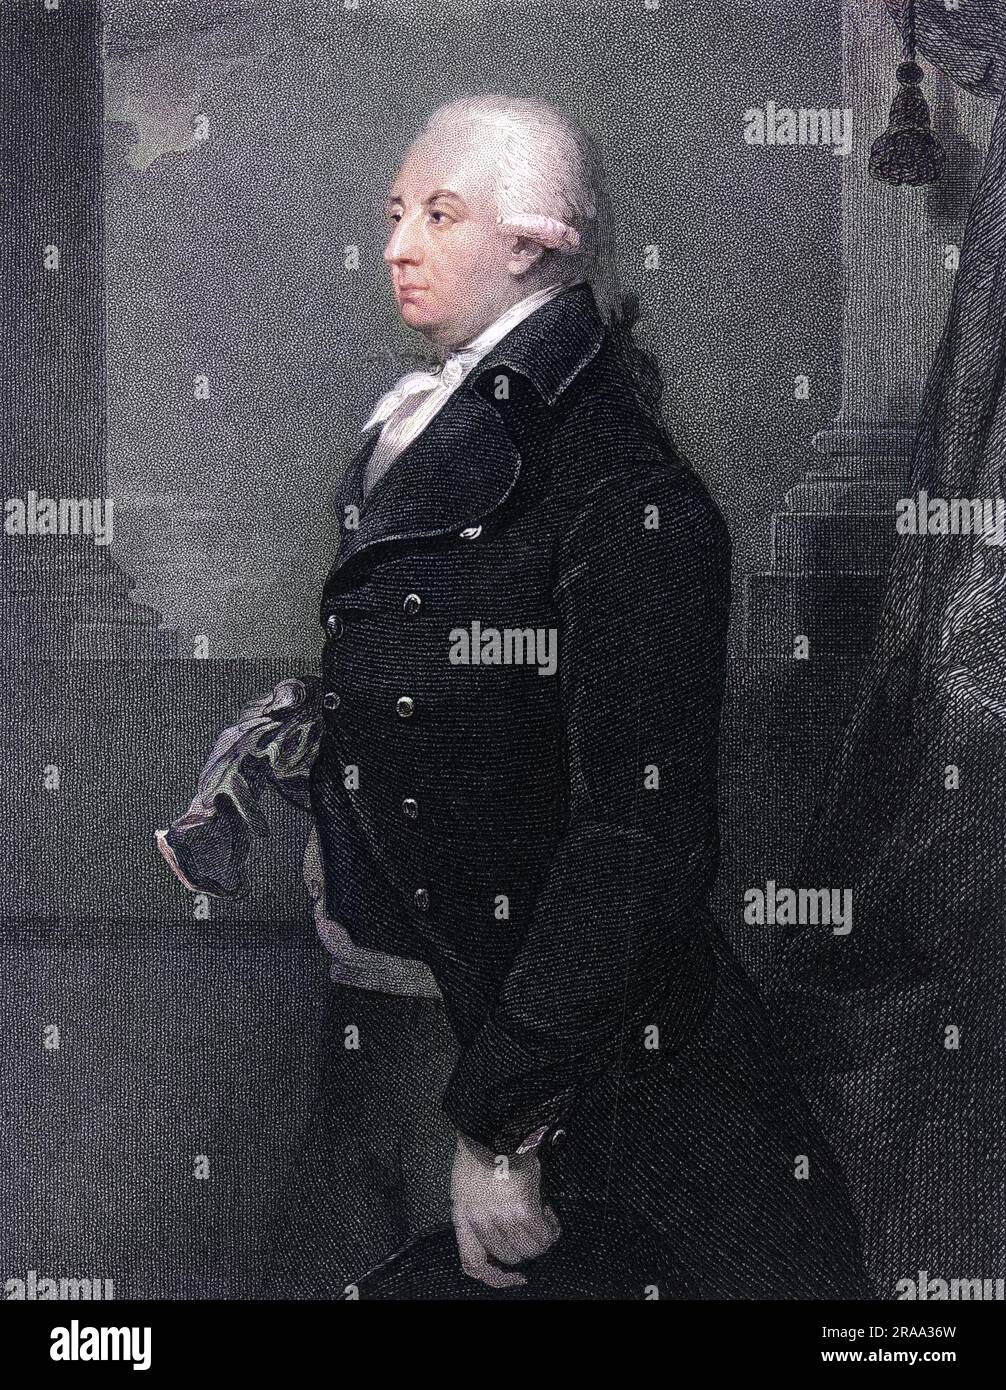 JOHN KER, terzo duca di ROXBURGHE statista e collezionista di libri Data: 1740 - 1804 Foto Stock